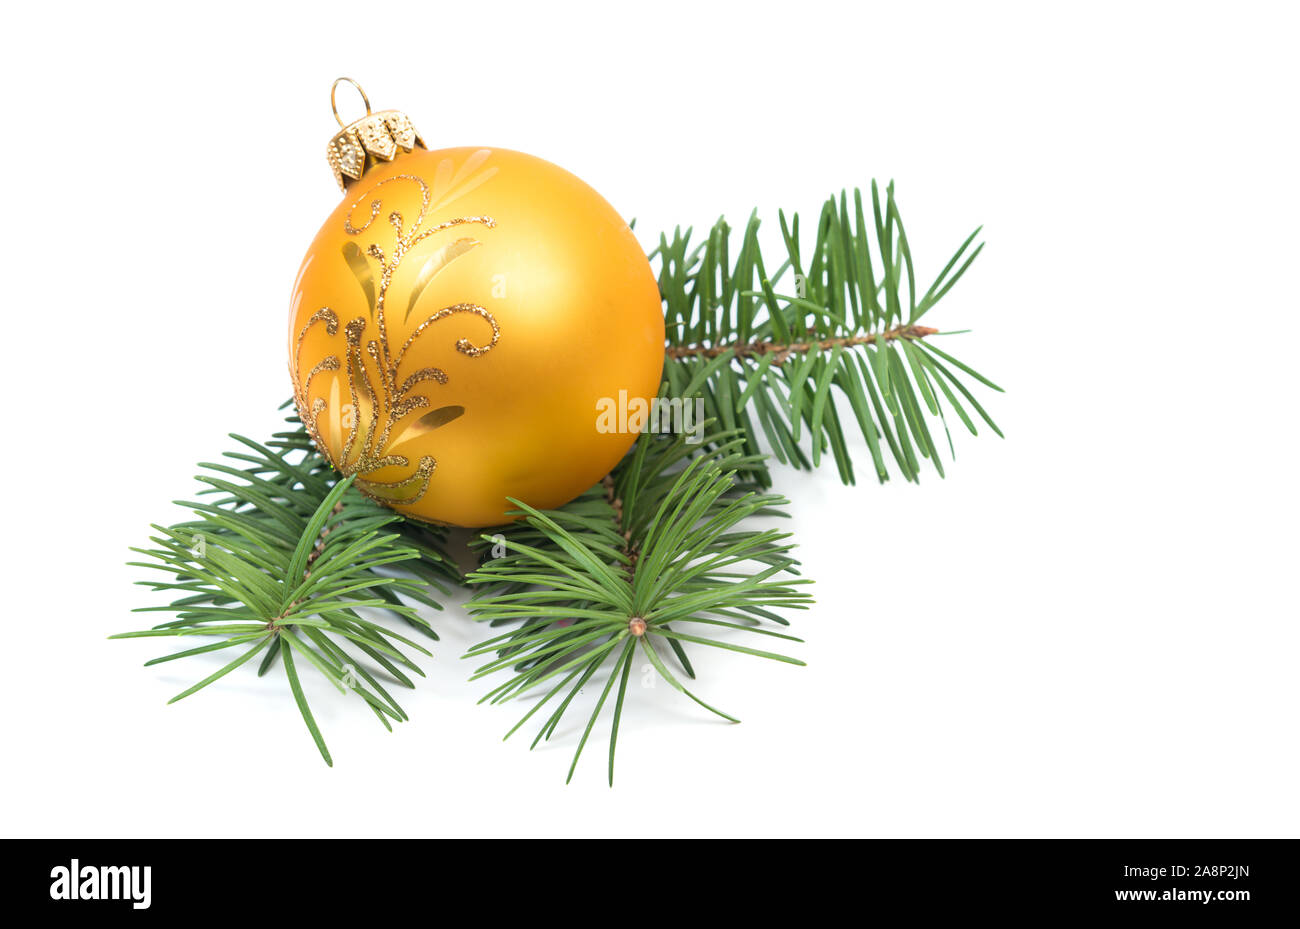 Décoration de Noël boule jaune avec des branches de sapin sur fond blanc Banque D'Images